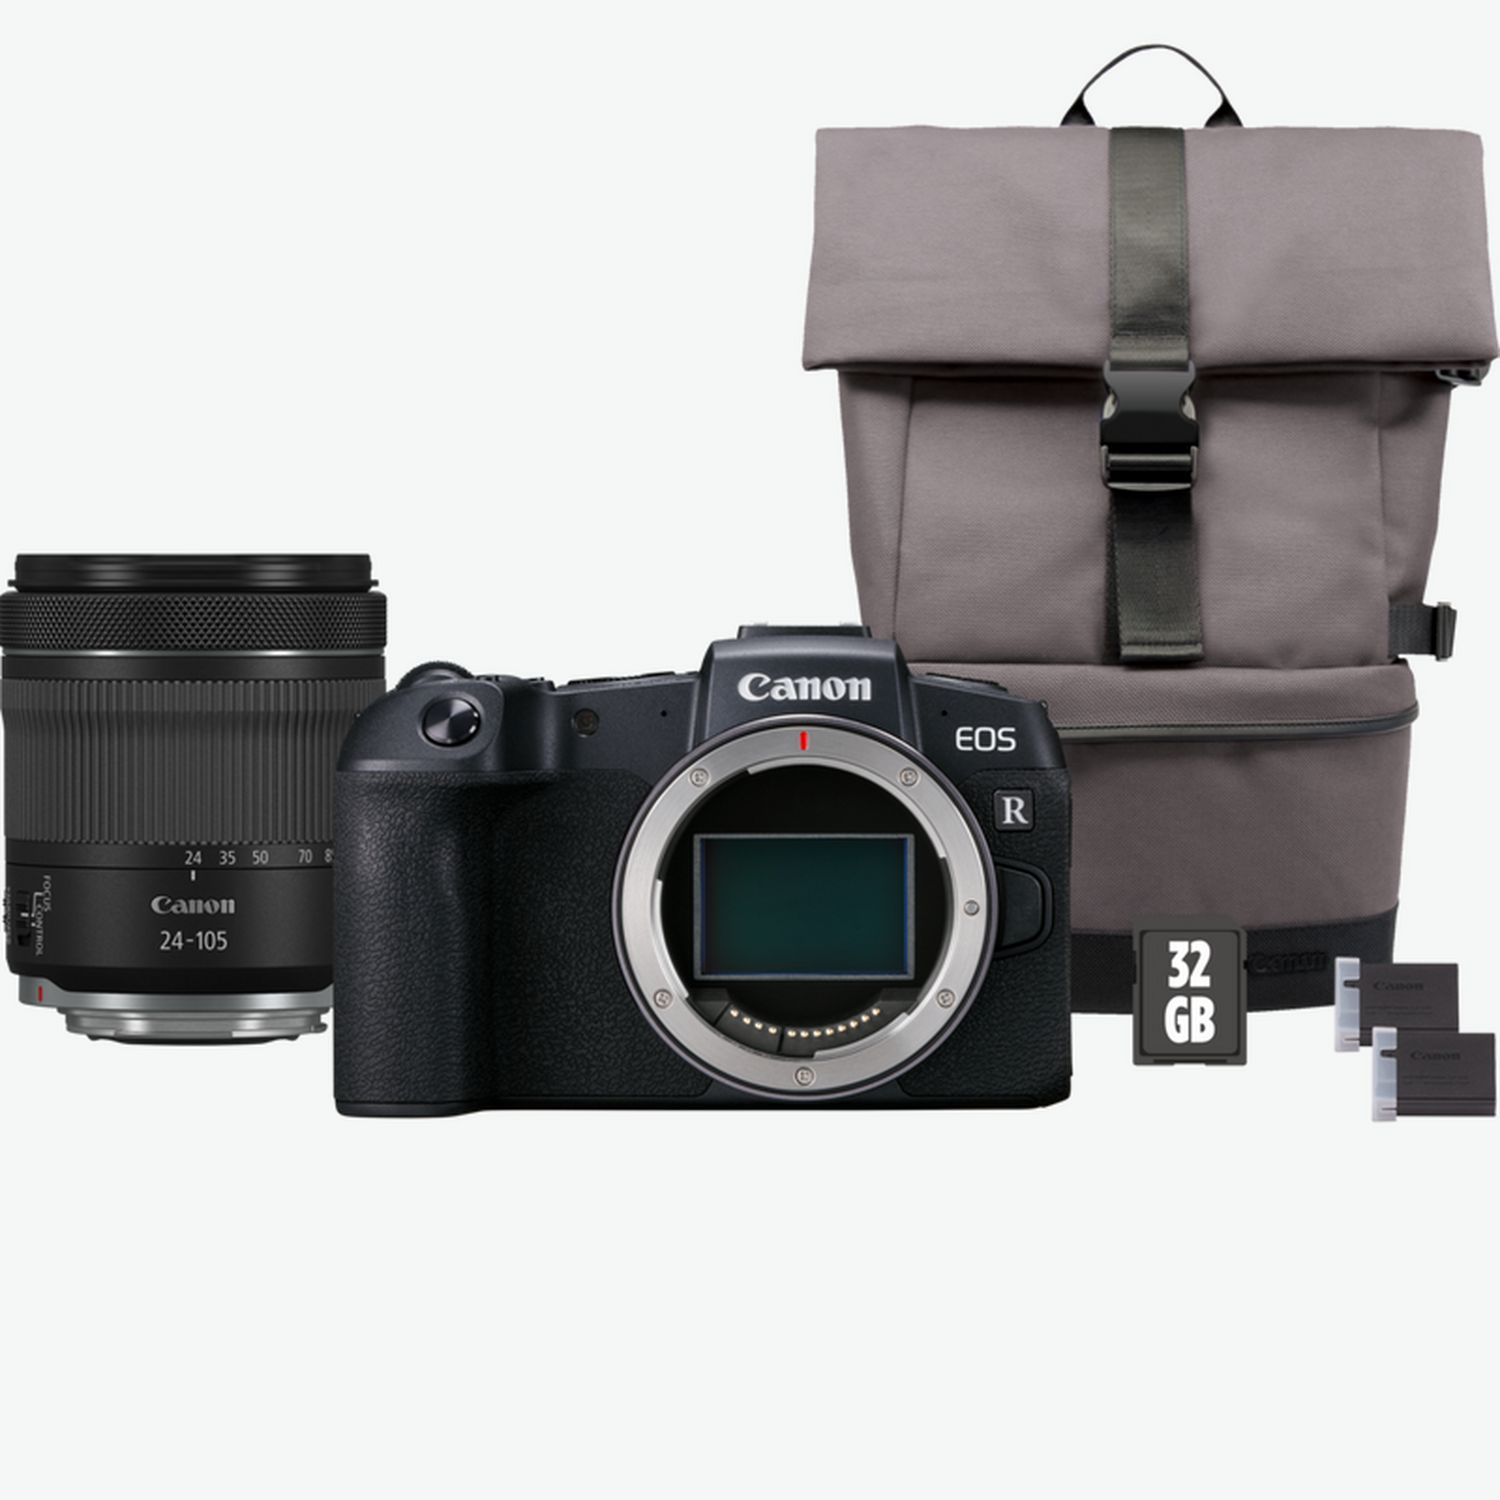 2000D Canon Shop Objektiv Deutschland 18-55mm II EOS WLAN-Kameras EF-S + — in IS Canon